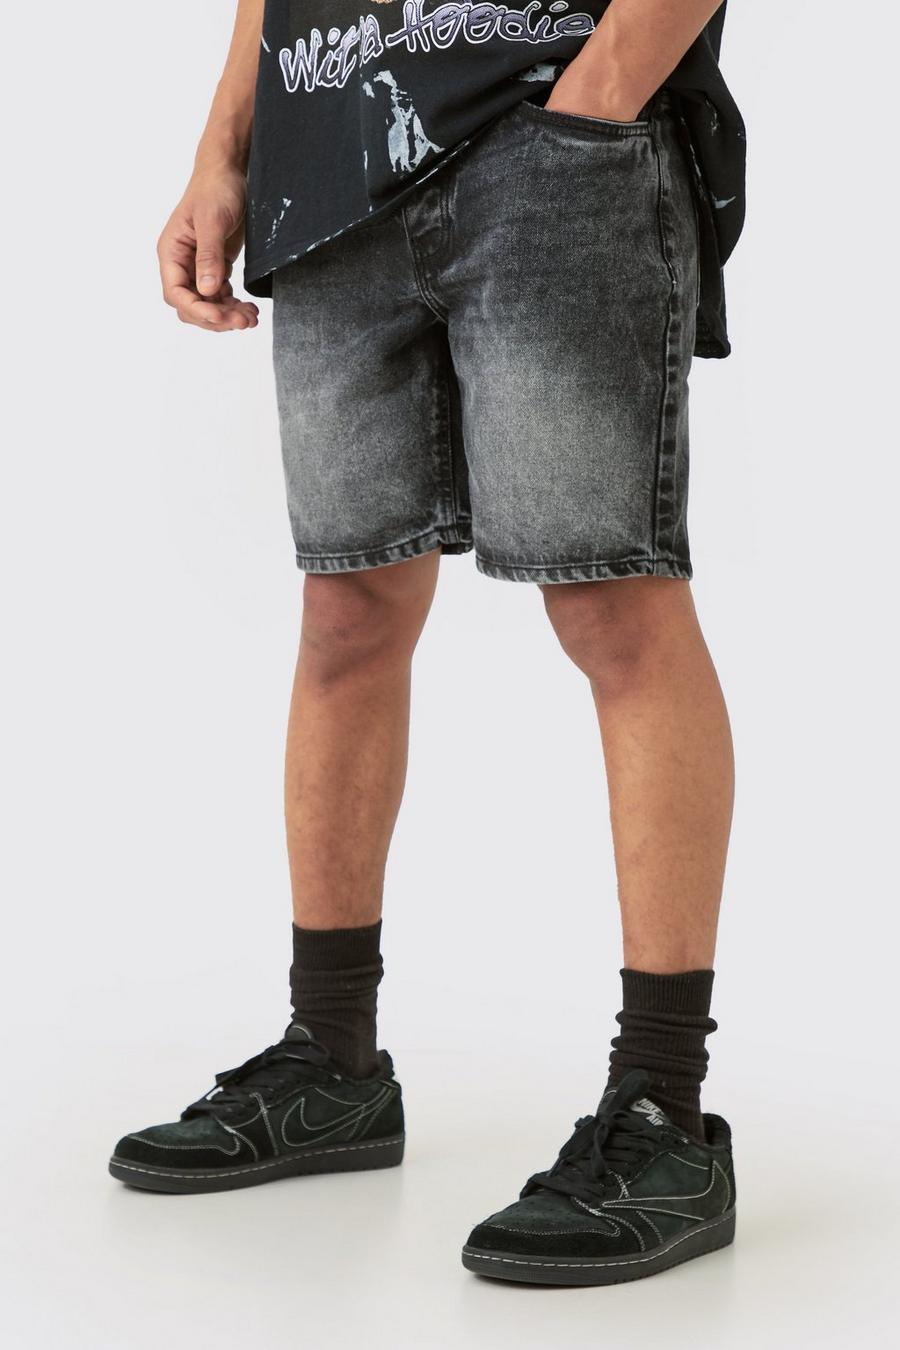 Pantalones cortos vaqueros ajustados sin tratar con cintura elástica en color carbón, Charcoal